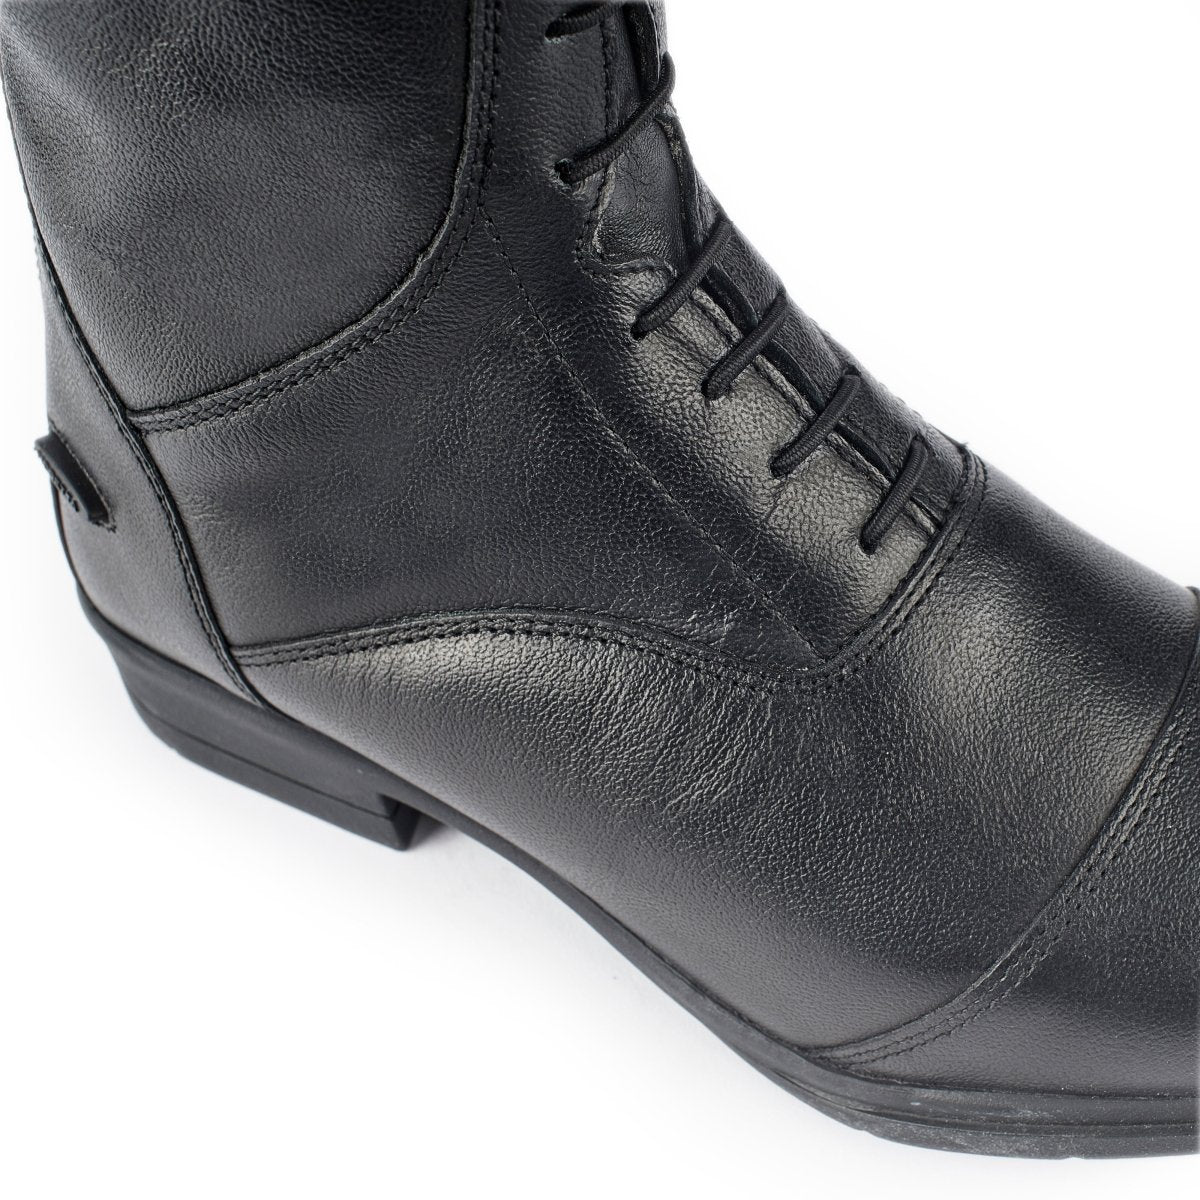 Moretta Albina Riding Boots - Black - 4/37